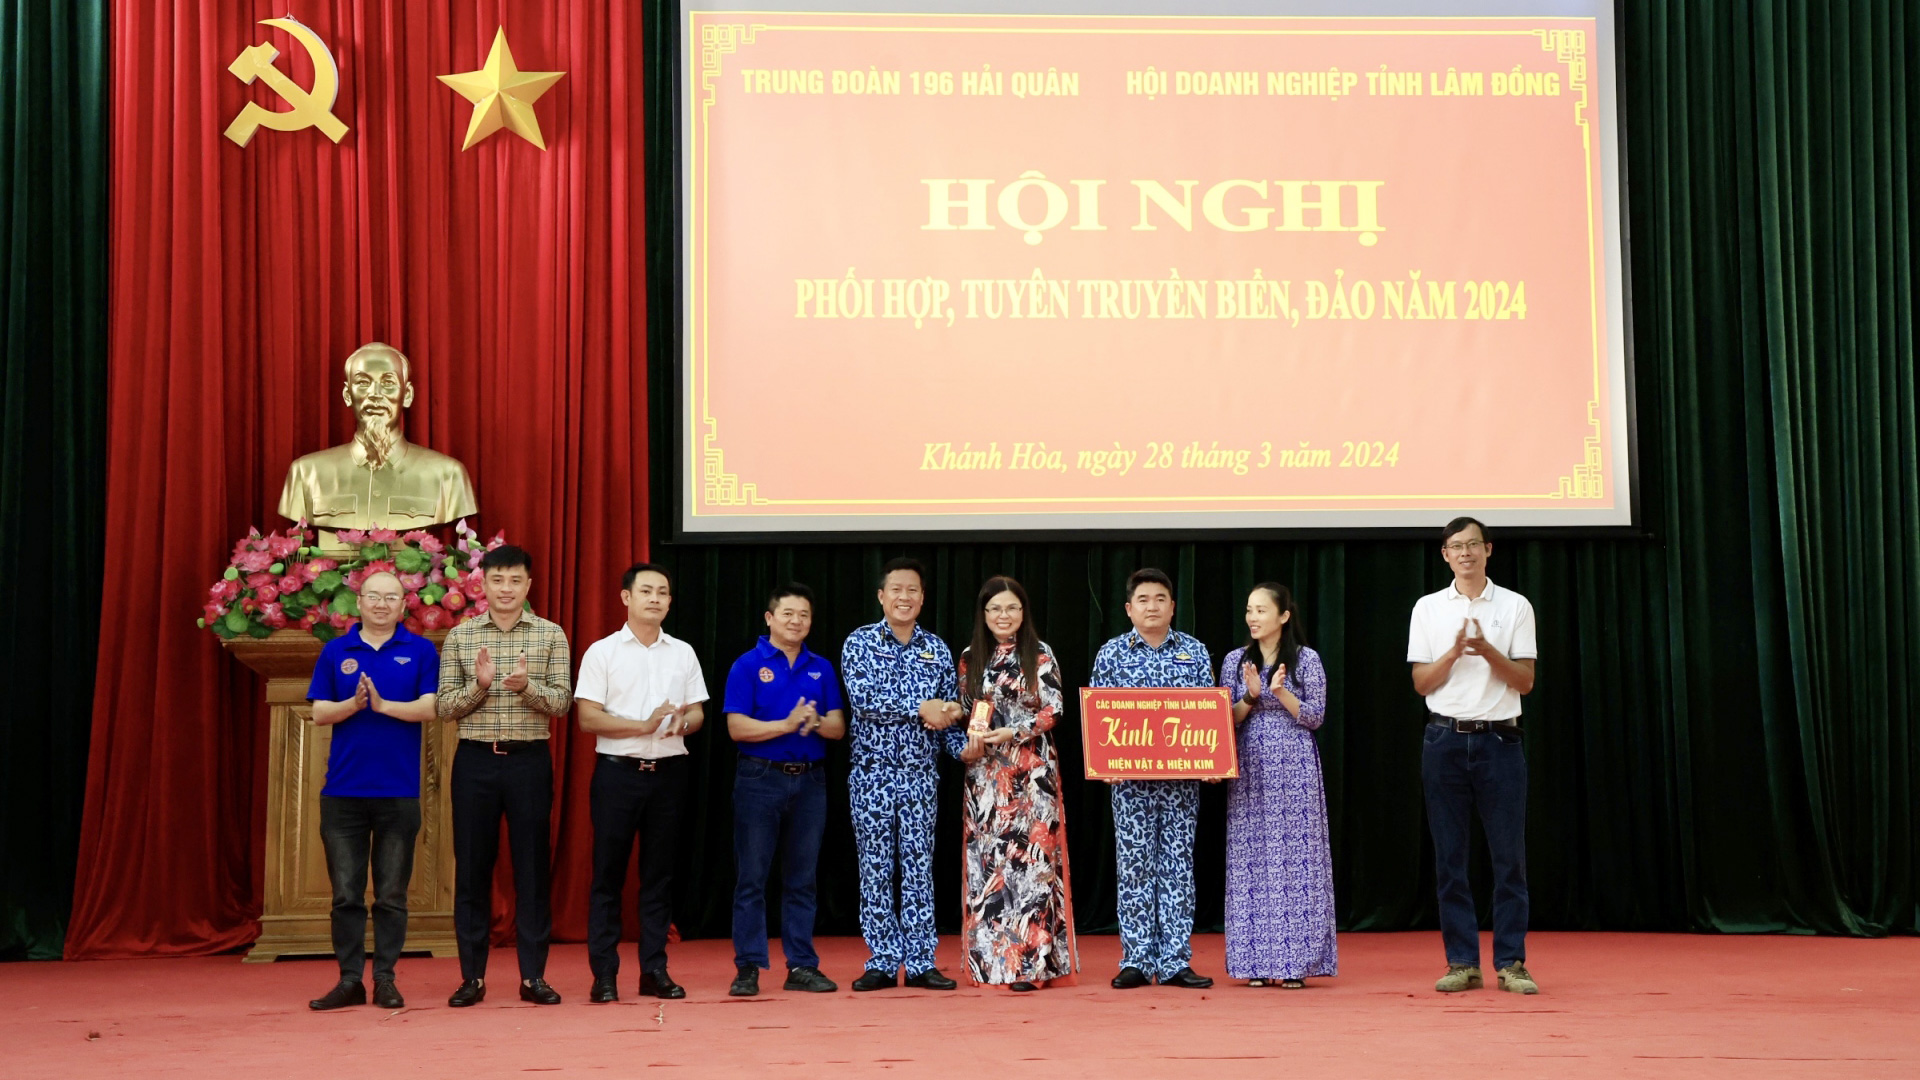 Đoàn công tác Hiệp hội Doanh nghiệp tỉnh Lâm Đồng tham dự Hội nghị phối hợp tuyên truyền biển đảo tại Trung đoàn Tàu ngầm 196